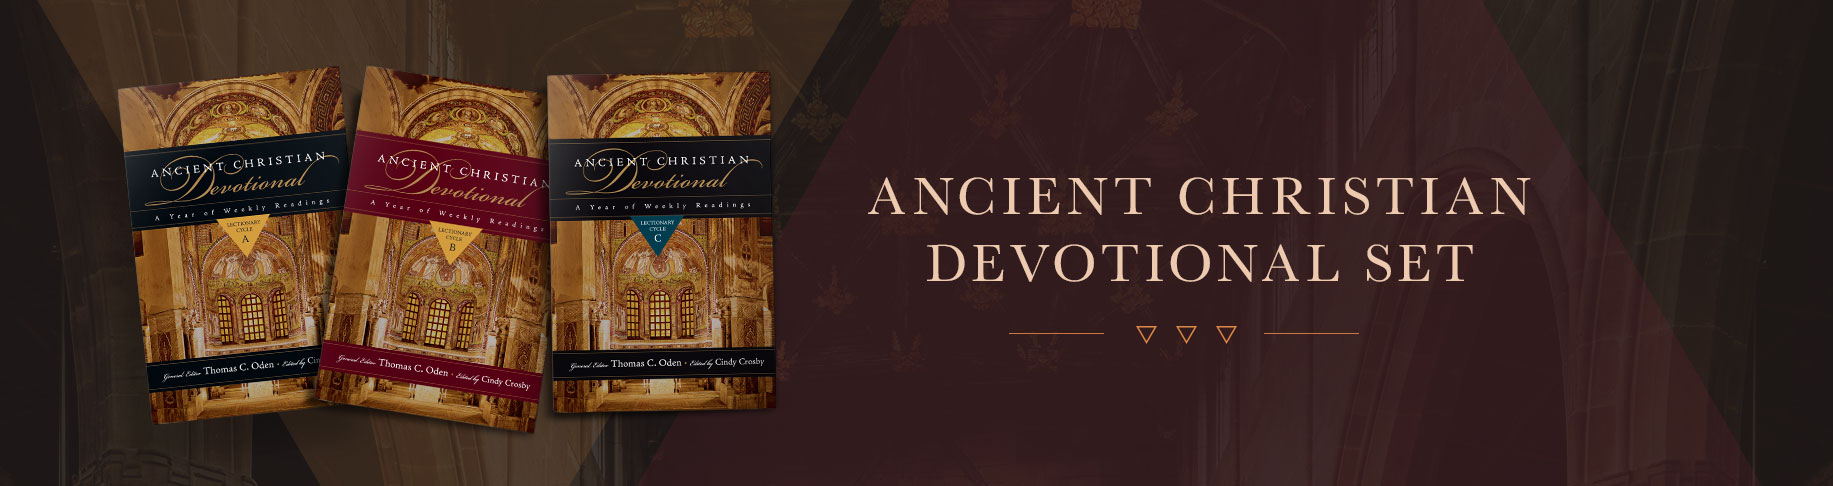 Ancient Christian Devotional Set